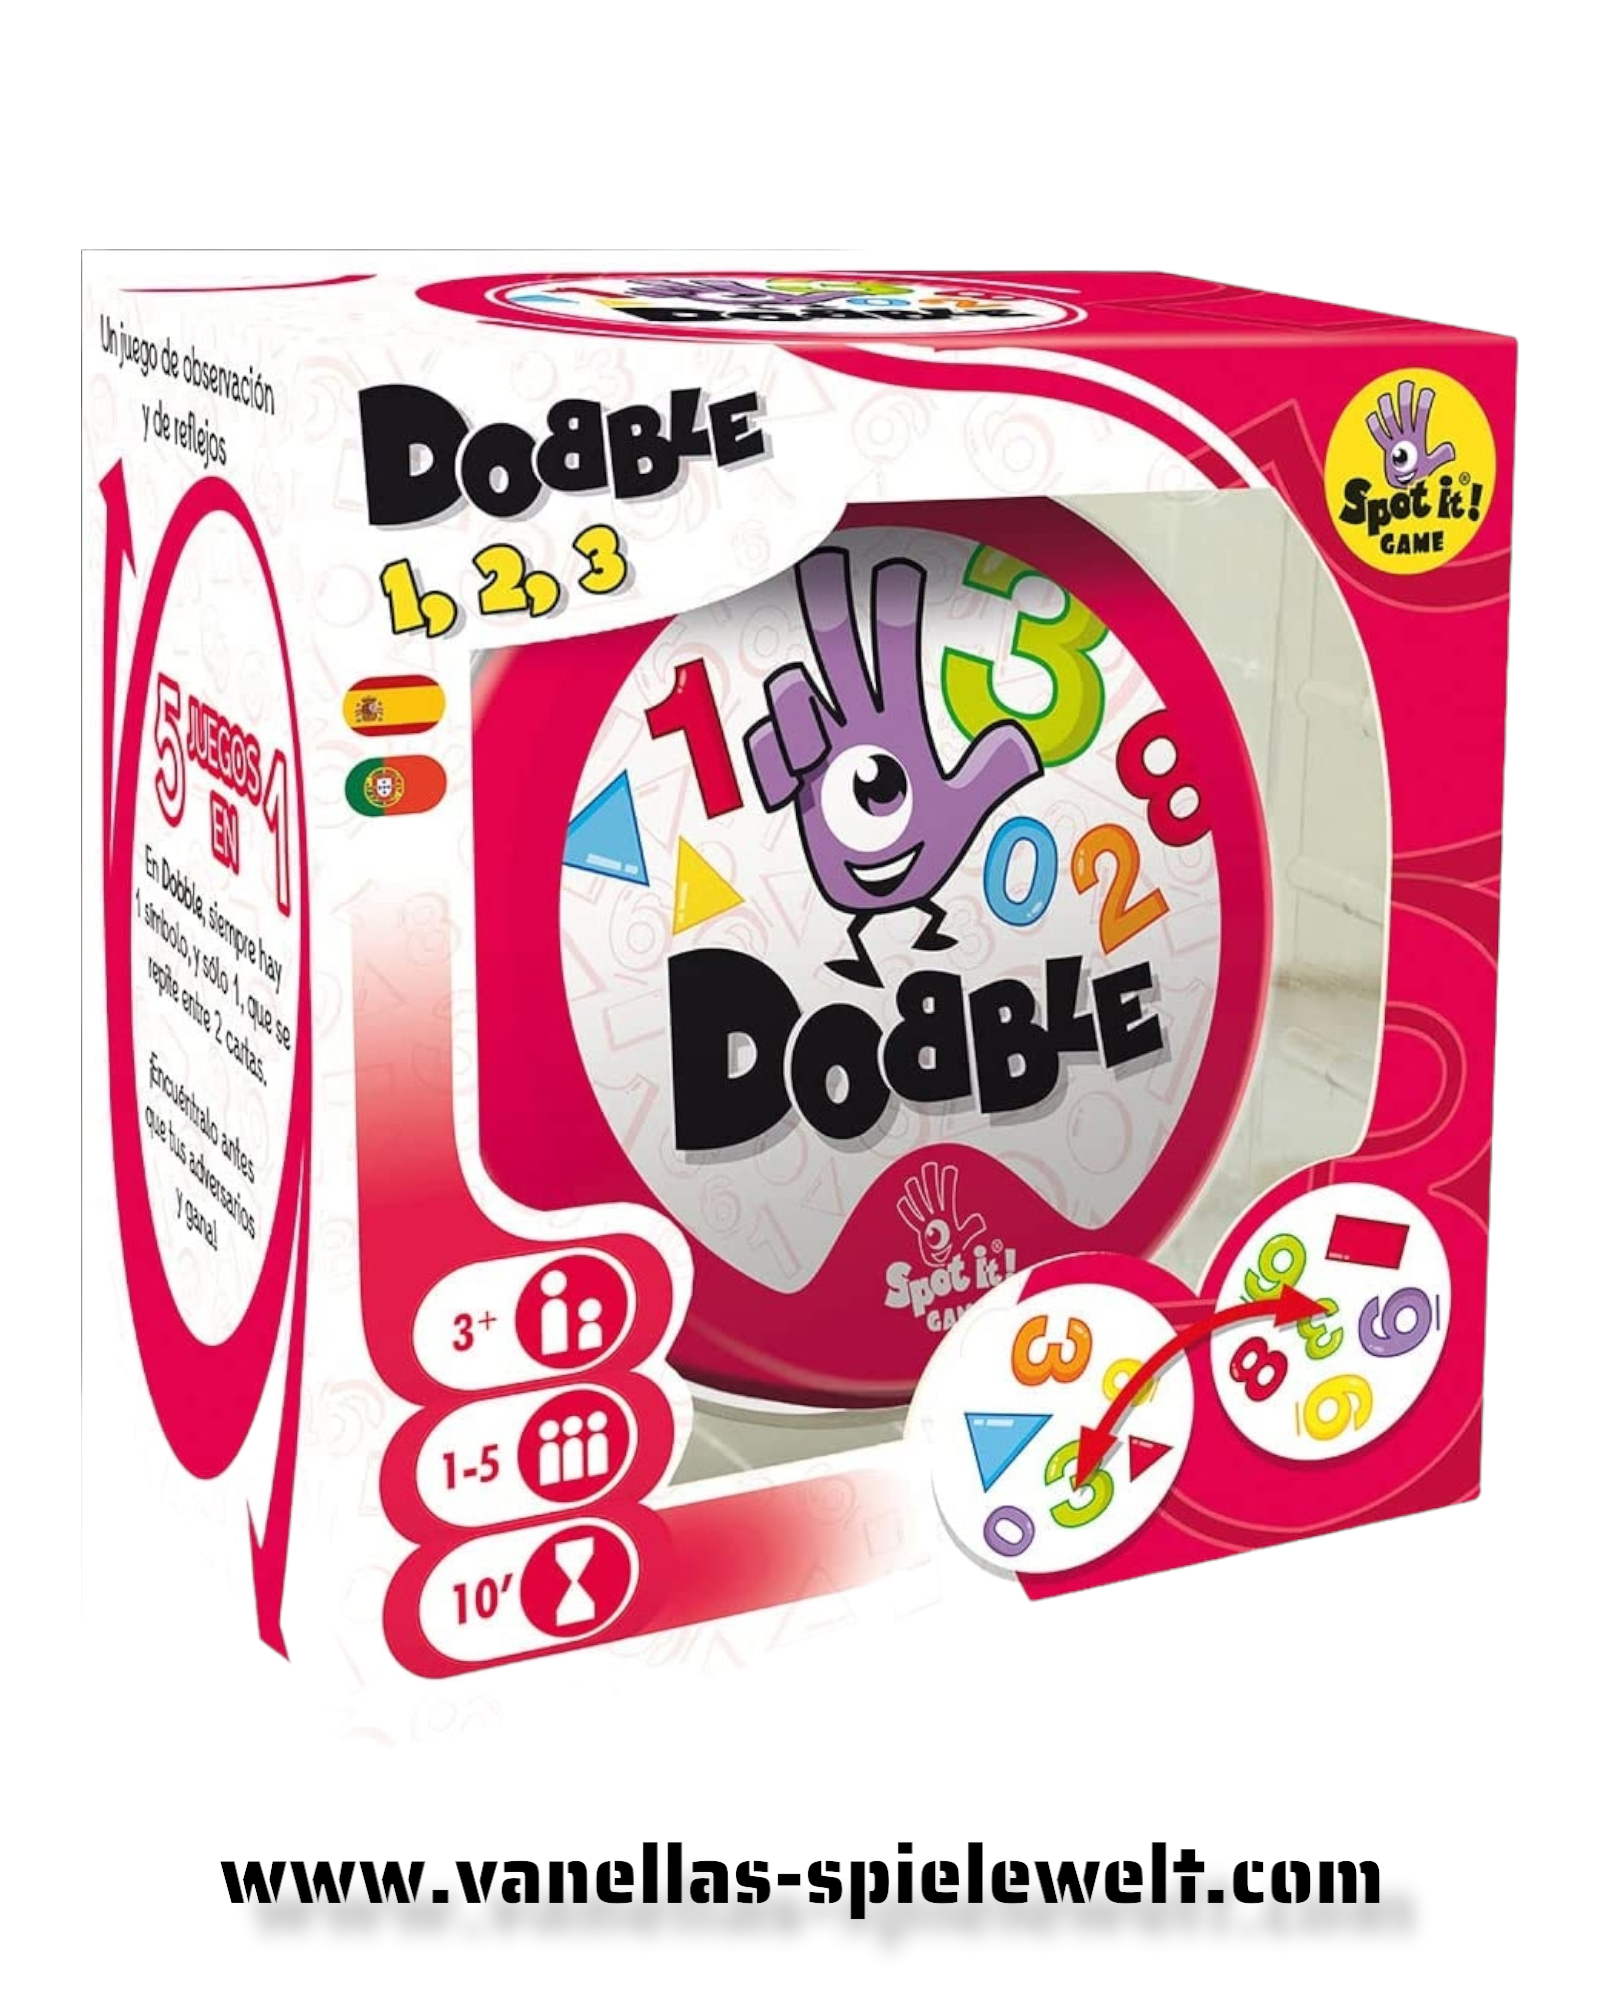 Dobble – Formen und Zahlen Vanellas Spielewelt